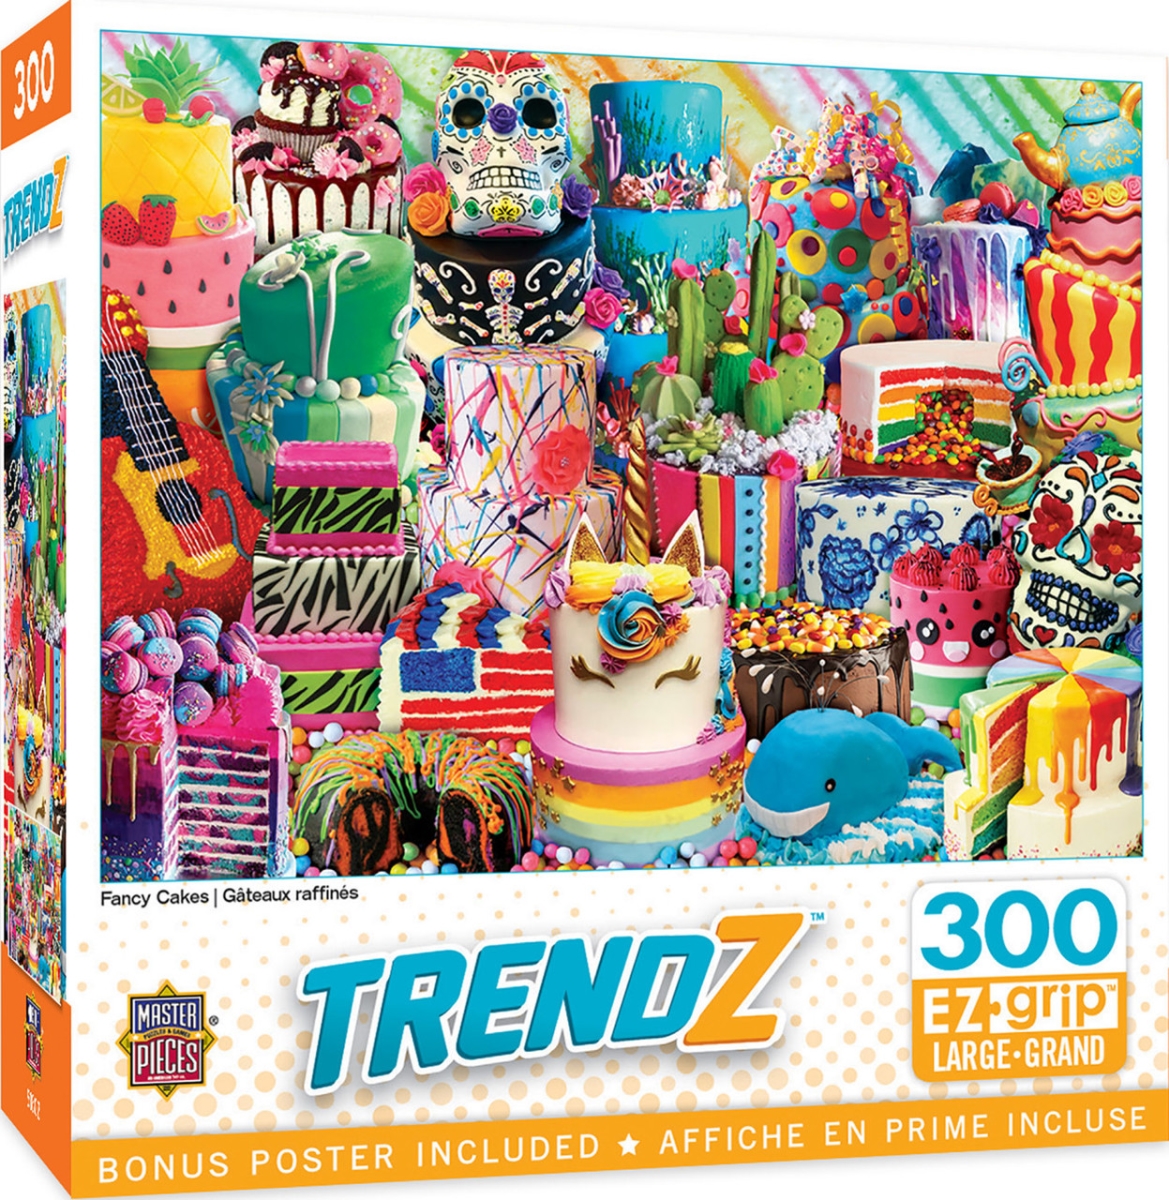 32037 Trendz Fancy Cakes EzGrip Puzzle, 300 Piece -  Masterpieces